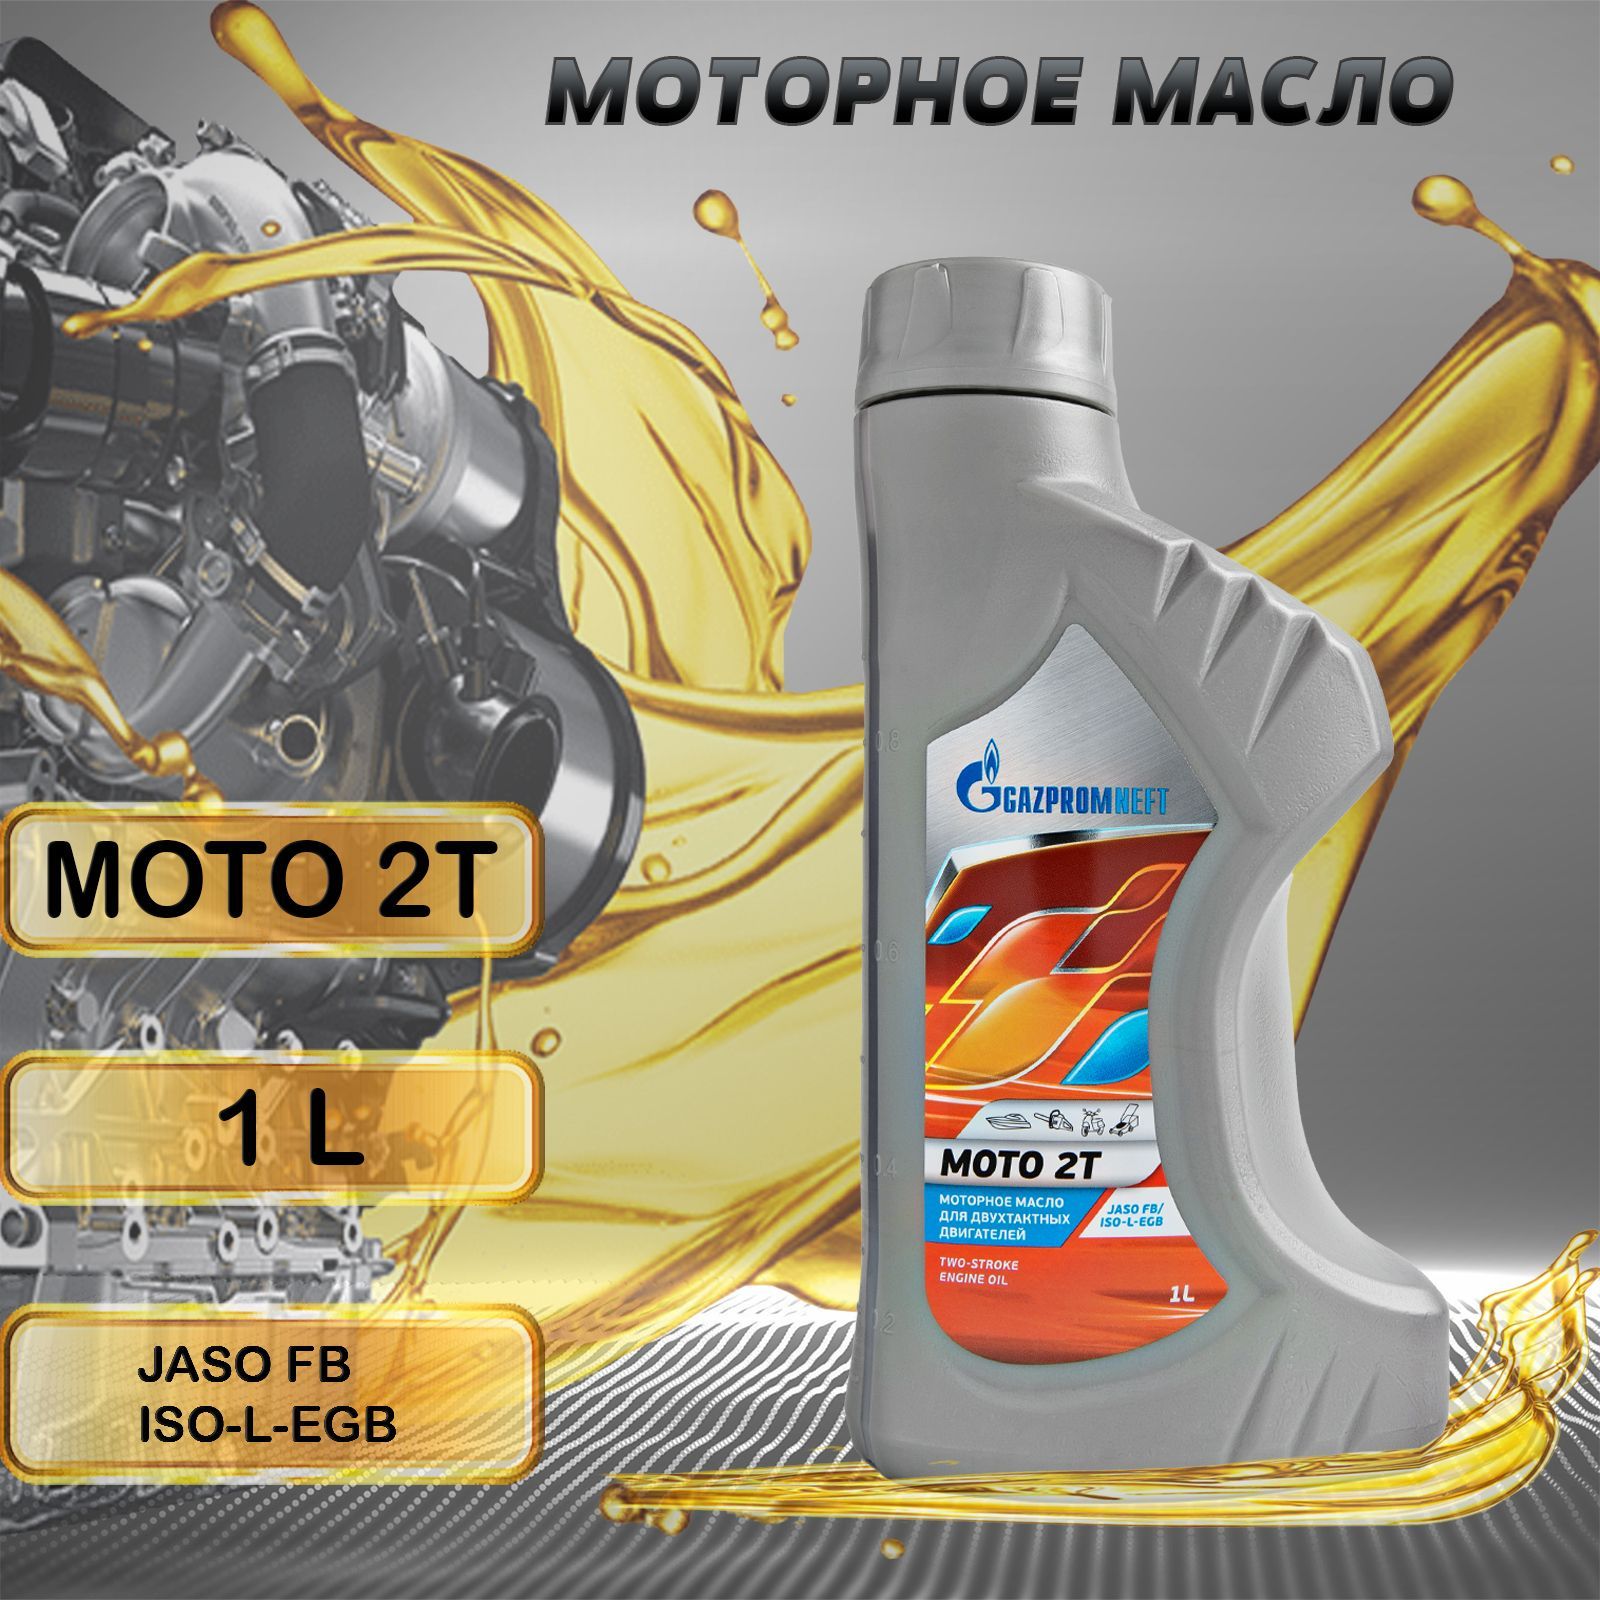 Масло газпромнефть отзывы владельцев. Масло Gazpromneft Moto 2т (1л). Моторное масло FTL 2т минеральное 1 л. Масло в светофоре моторное Газпромнефть отзывы. Масло в редуктор Газпромнефть отзывы.